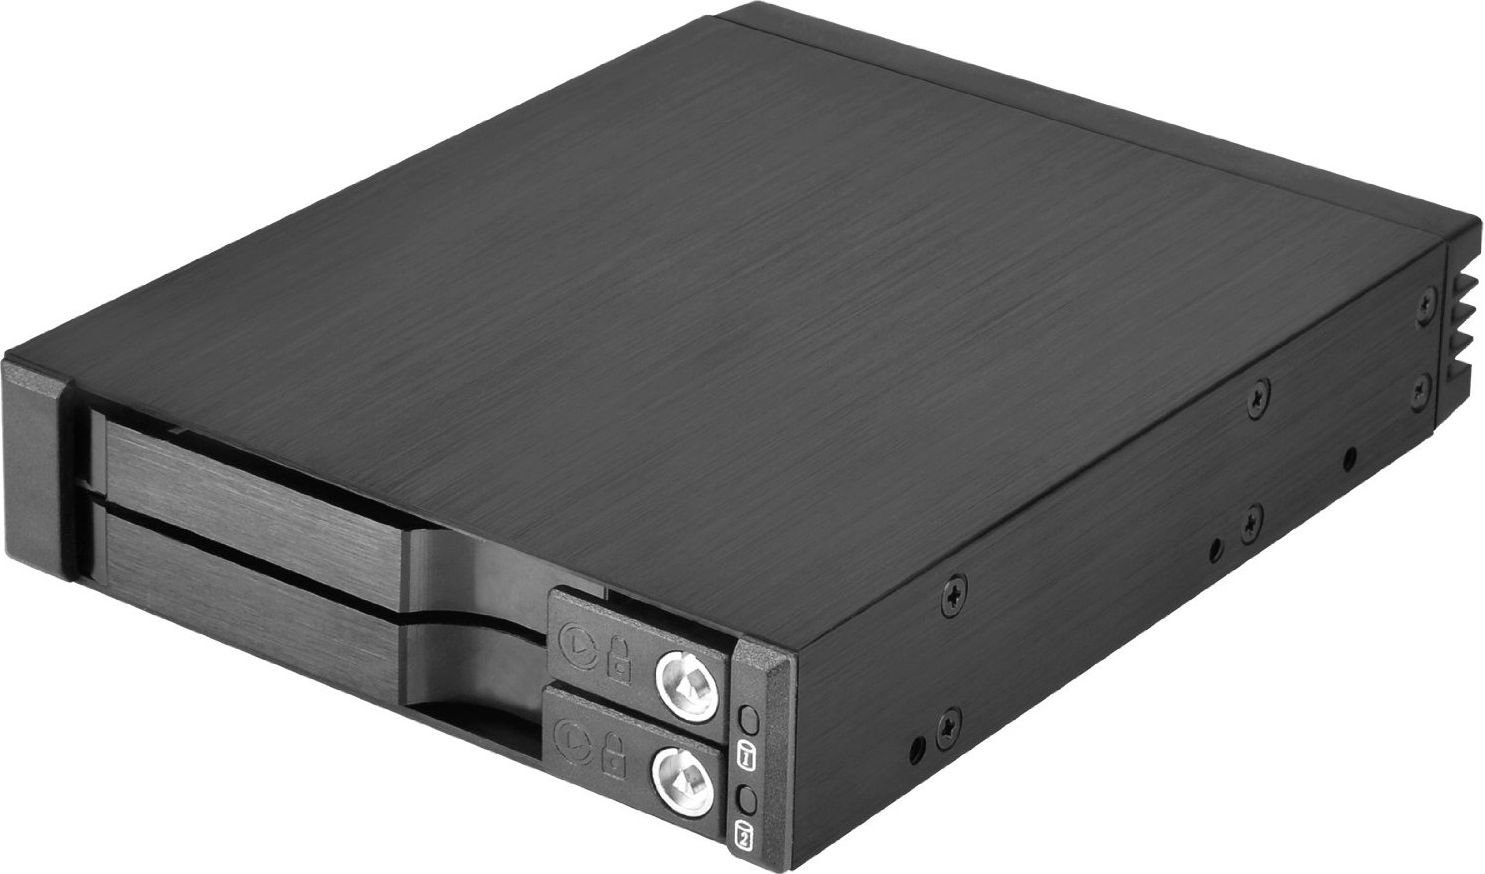 2x 2,5 inch HDD / SSD SATA (SST-FS202B)